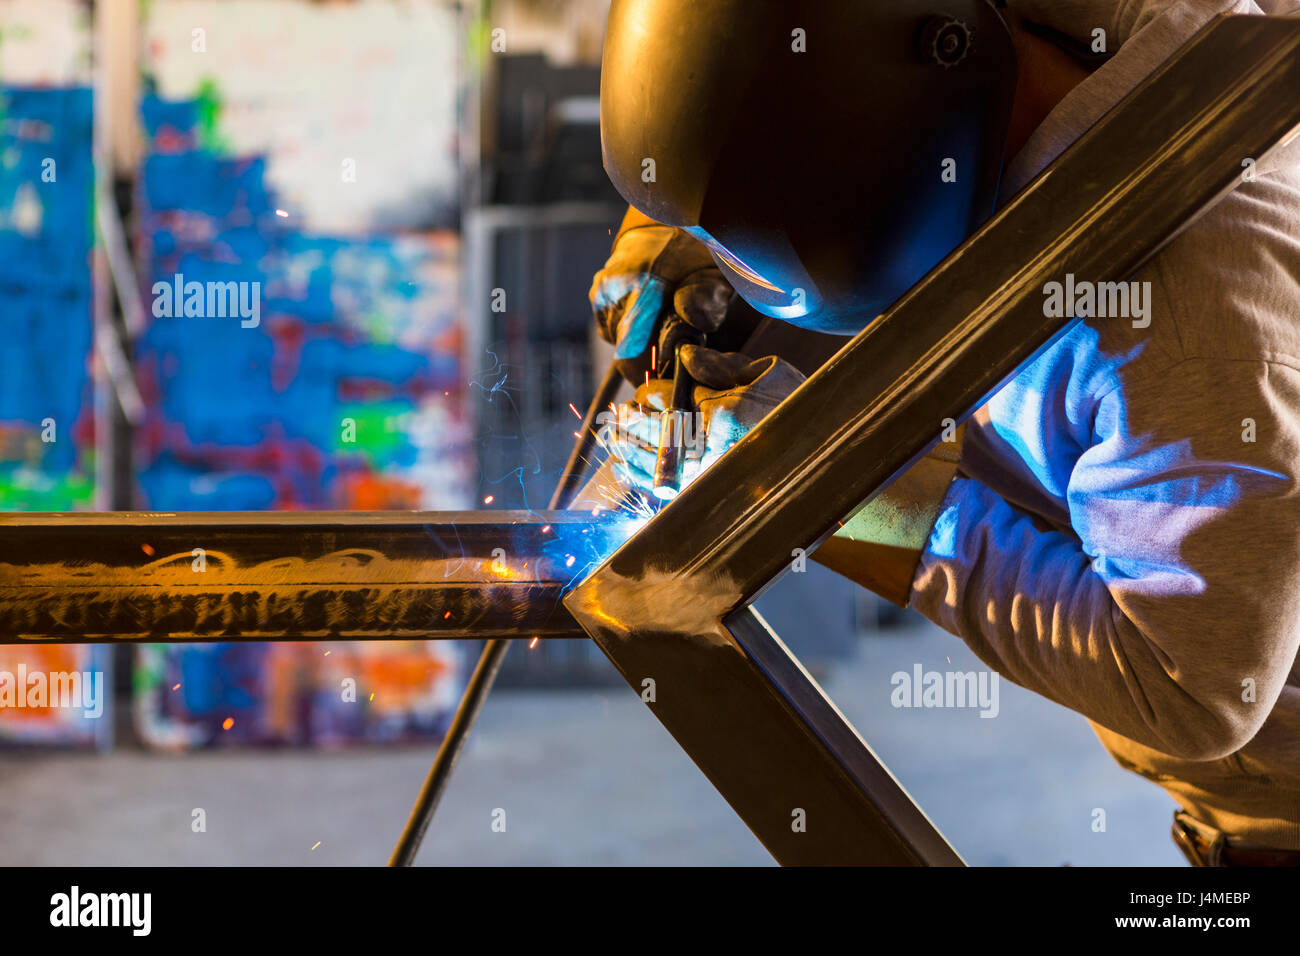 Man welding metal sculpture Stock Photo